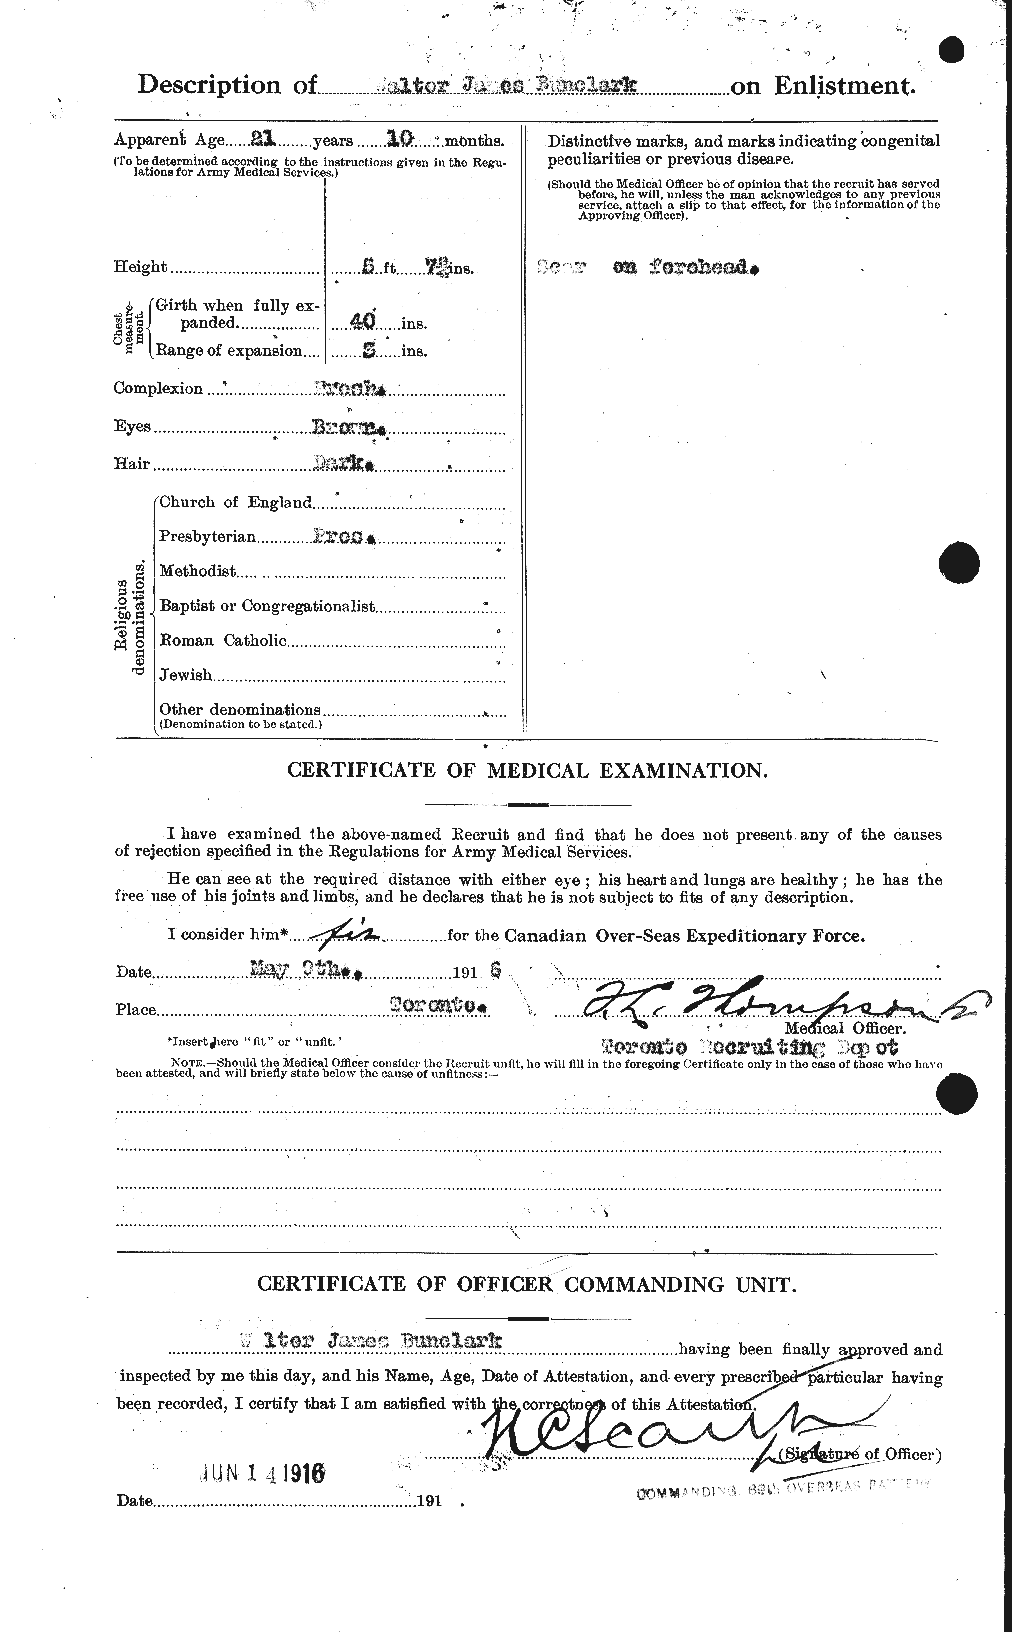 Dossiers du Personnel de la Première Guerre mondiale - CEC 270353b